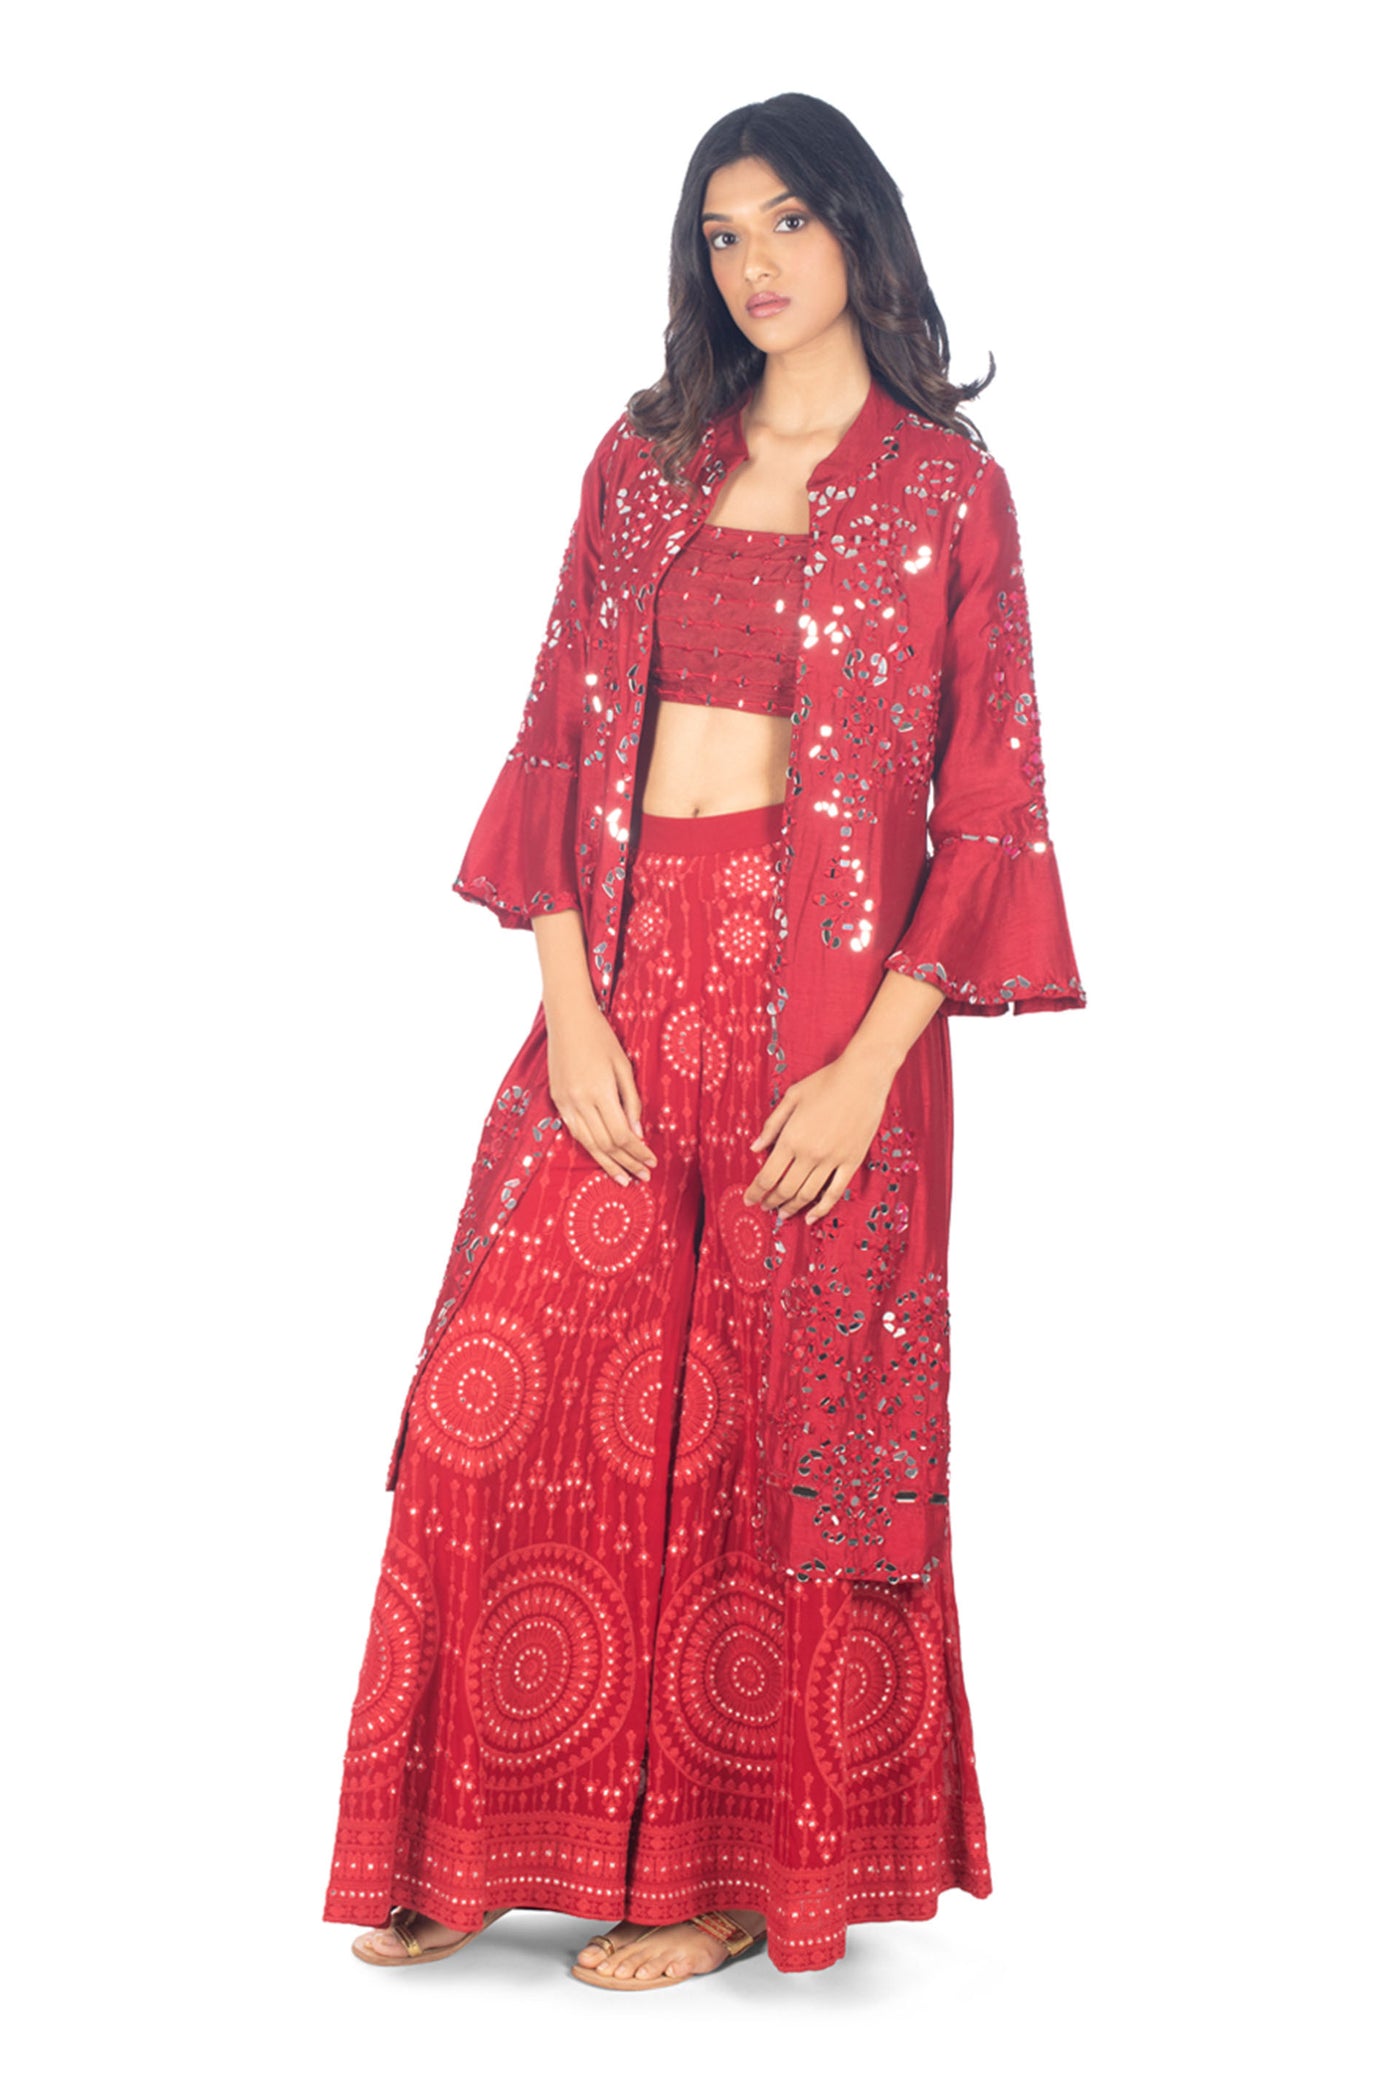 Monisha Jaising Deep Red Mirrorwork Sharara red online shopping melange singapore indian designer wear